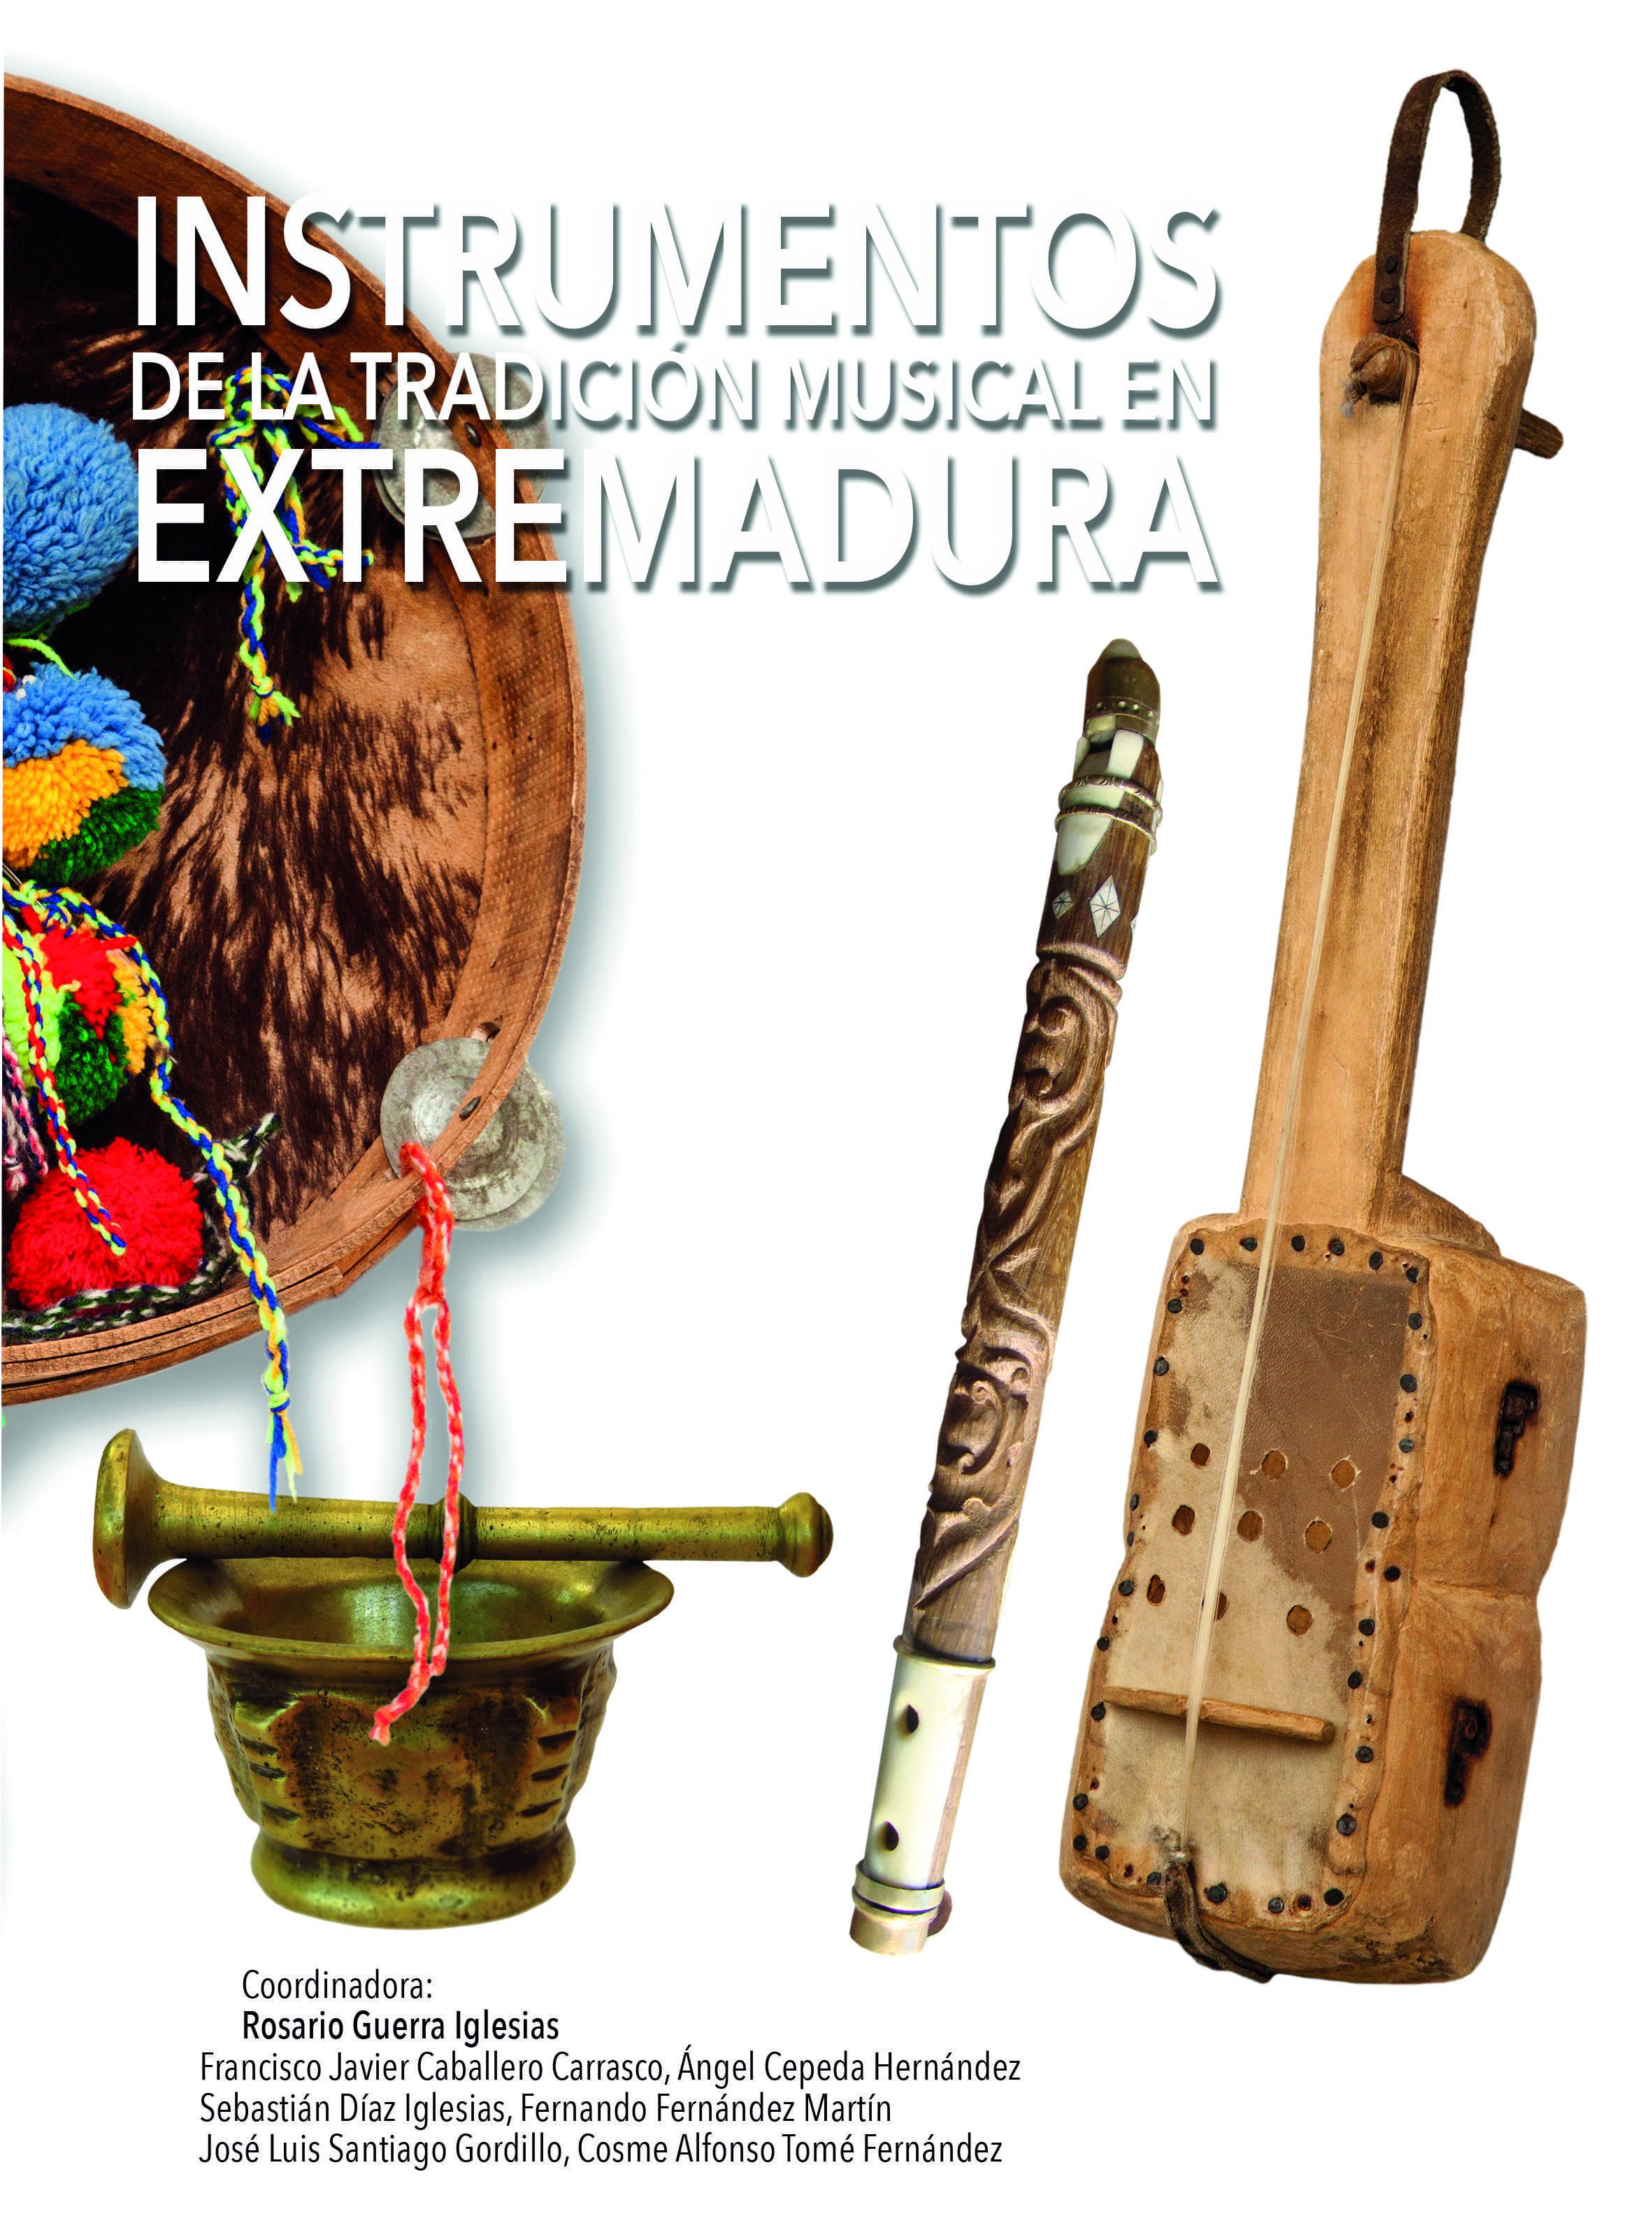 Imagen de portada del libro Instrumentos de la tradición musical en Extremadura